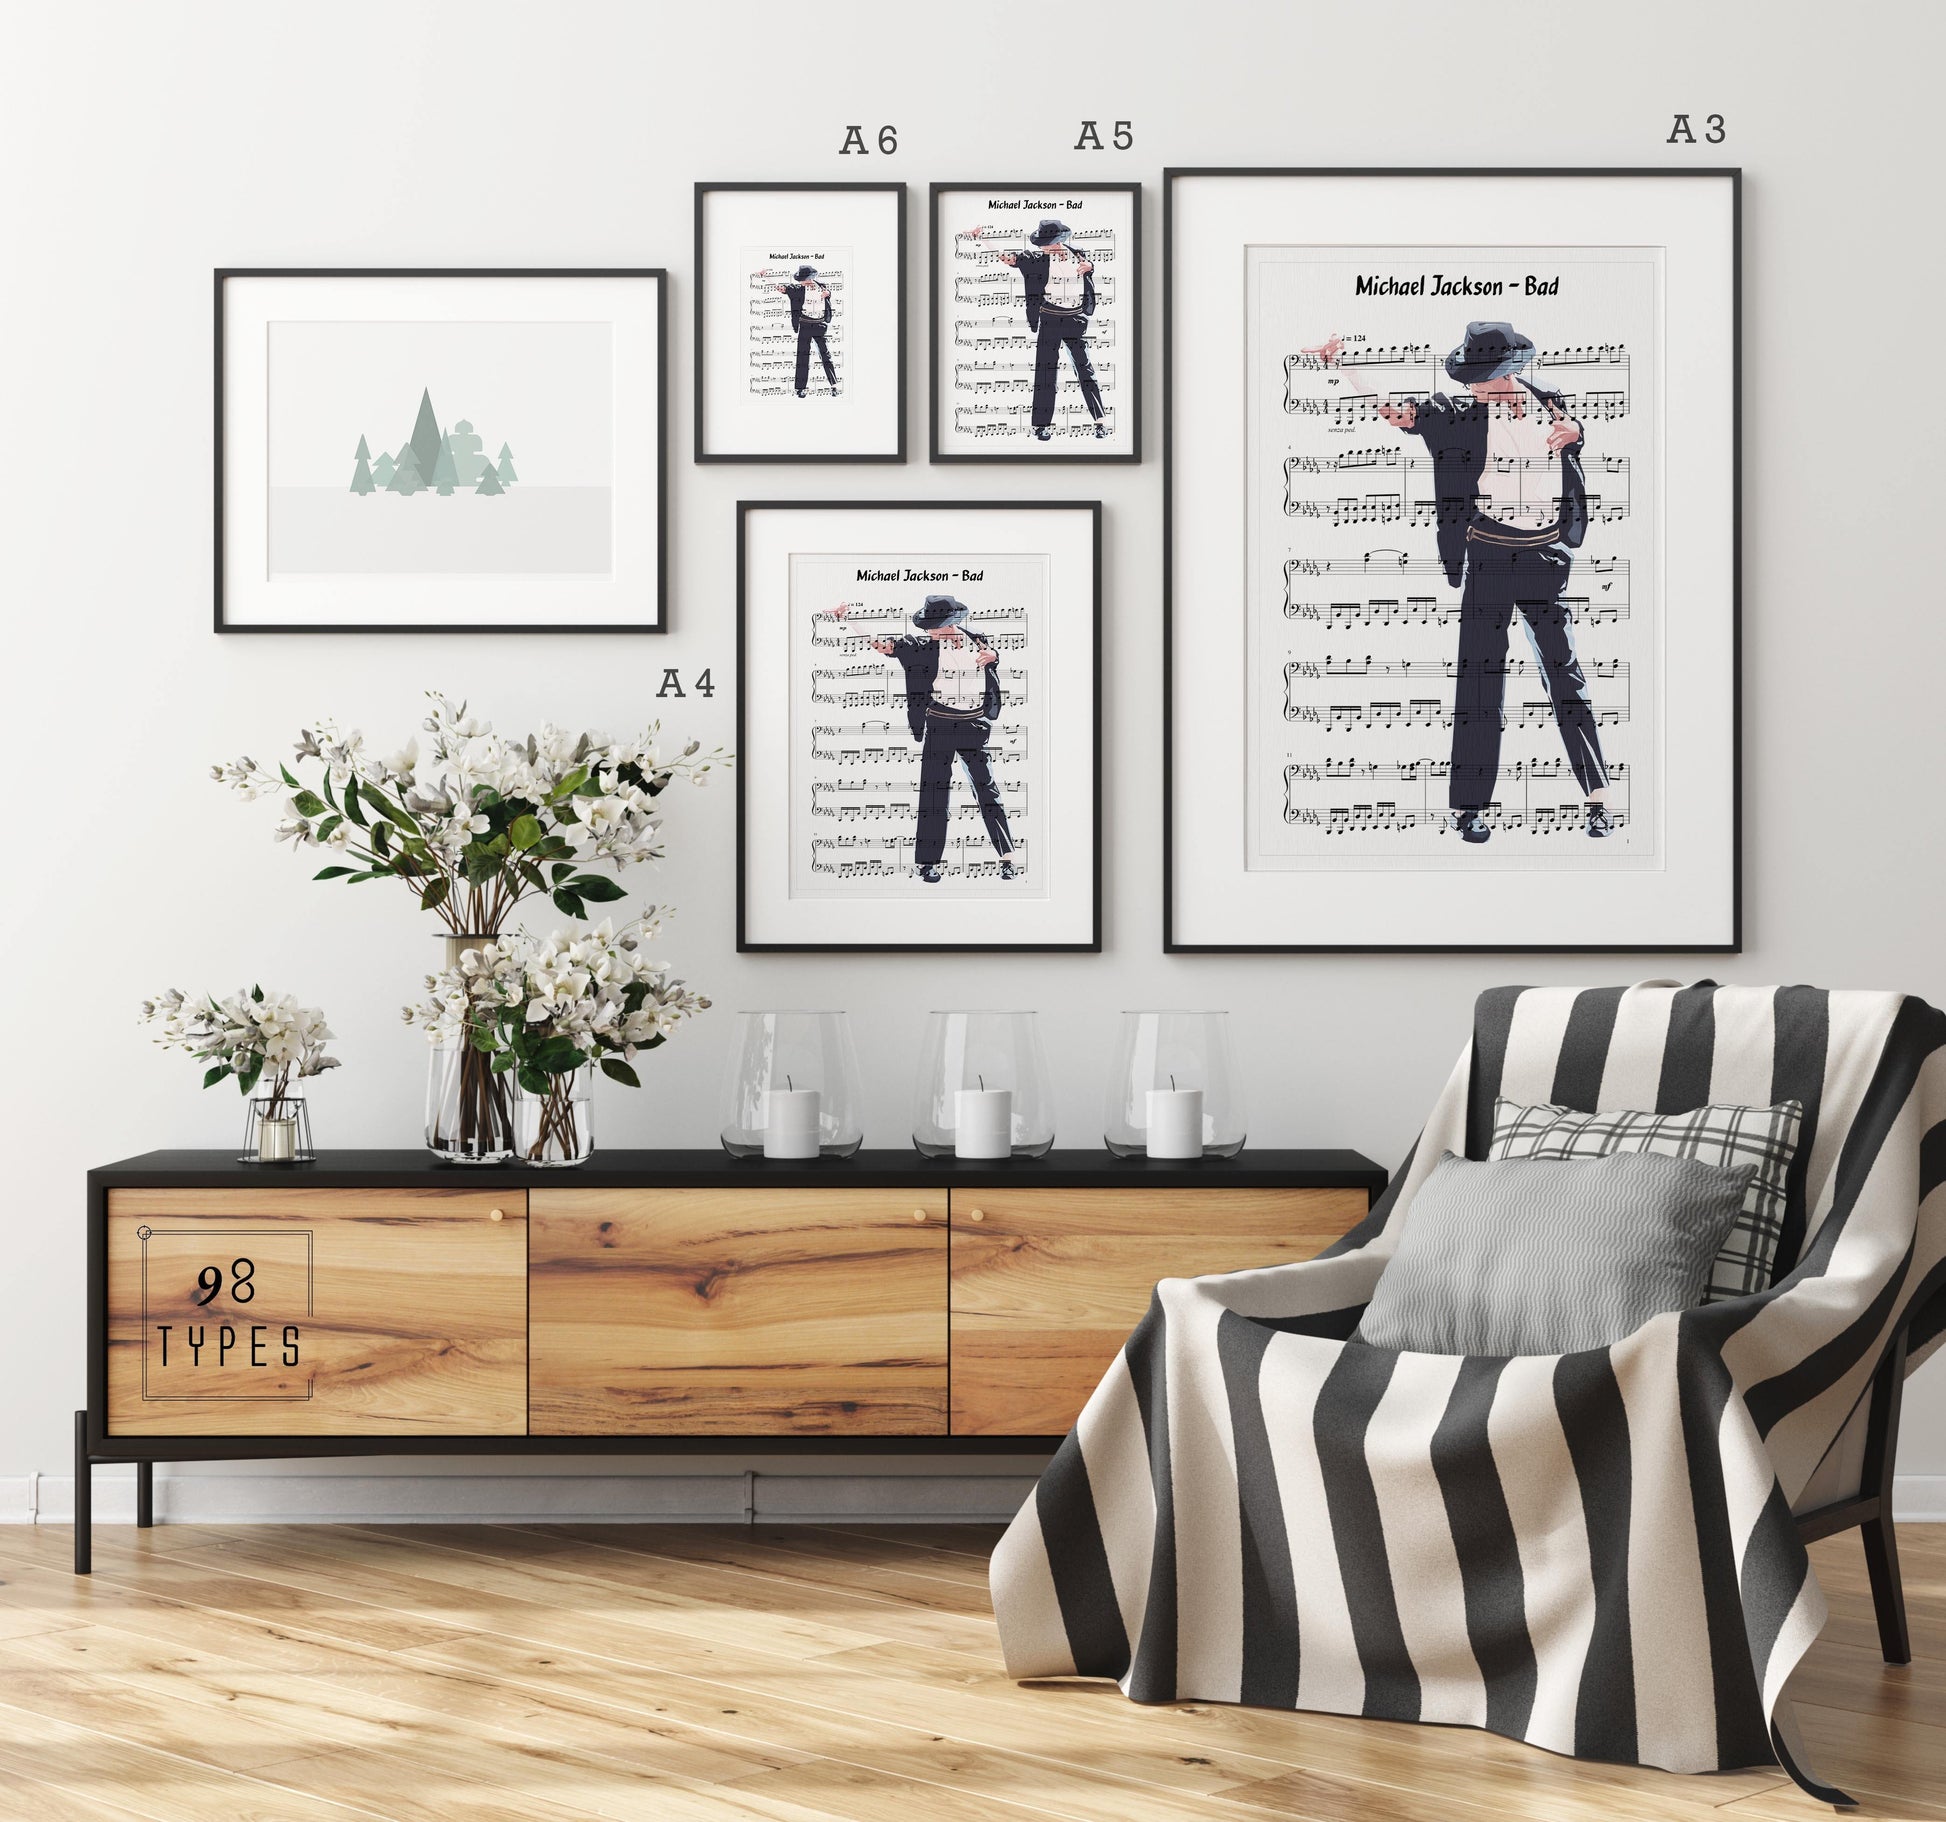 Michael Jackson - Bad Print | Sheet Music Wall Art | Song Music Sheet Notes Print